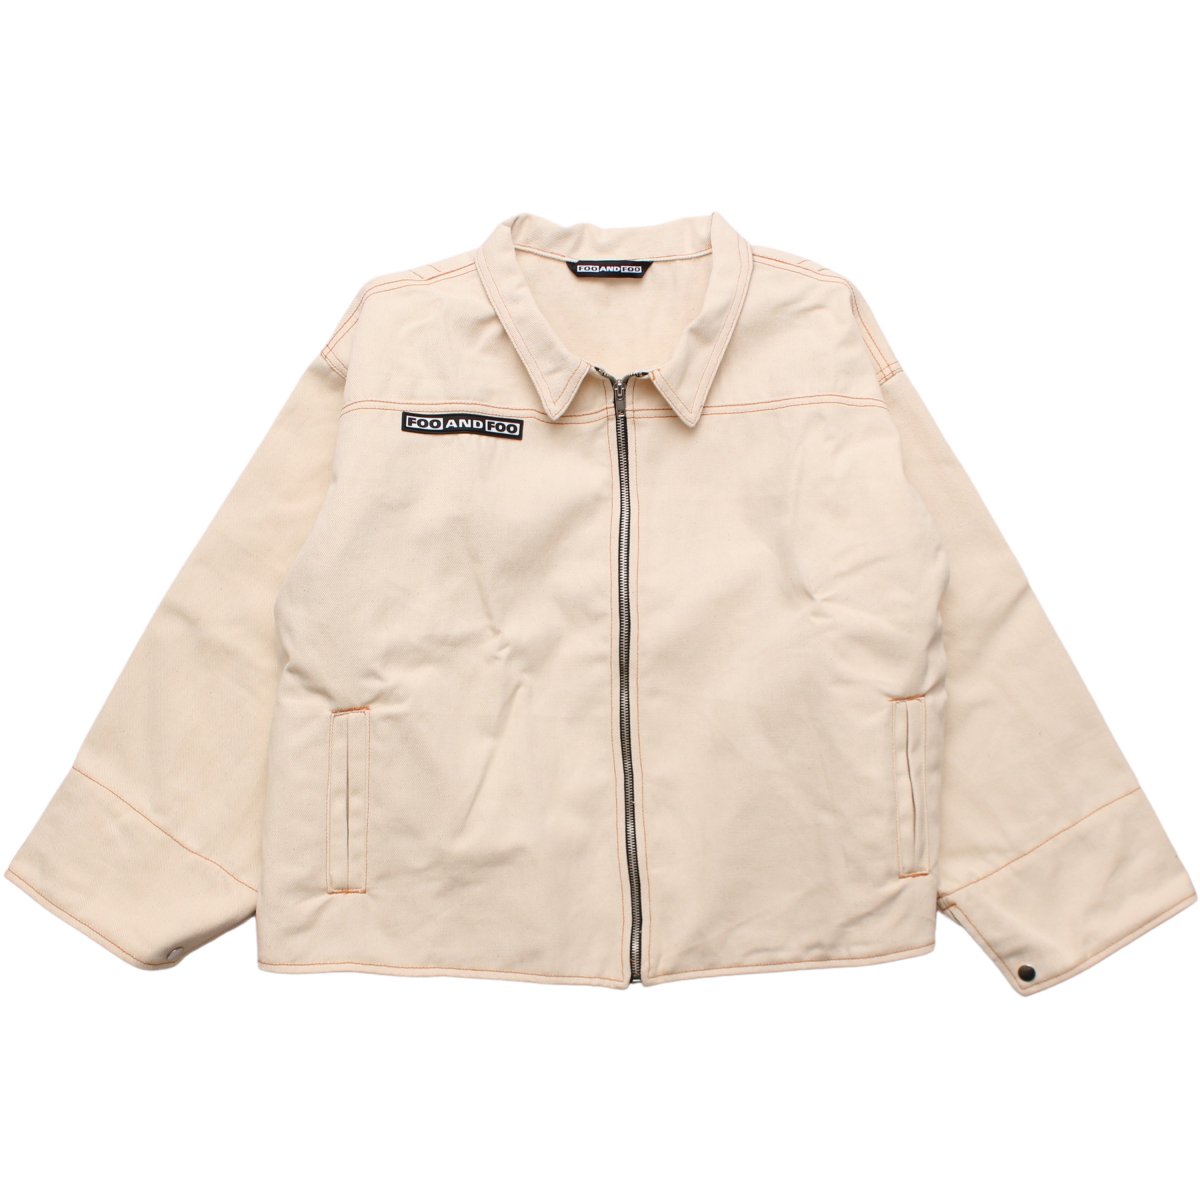 Jacket - DOMICILE TOKYO ONLINE SHOP